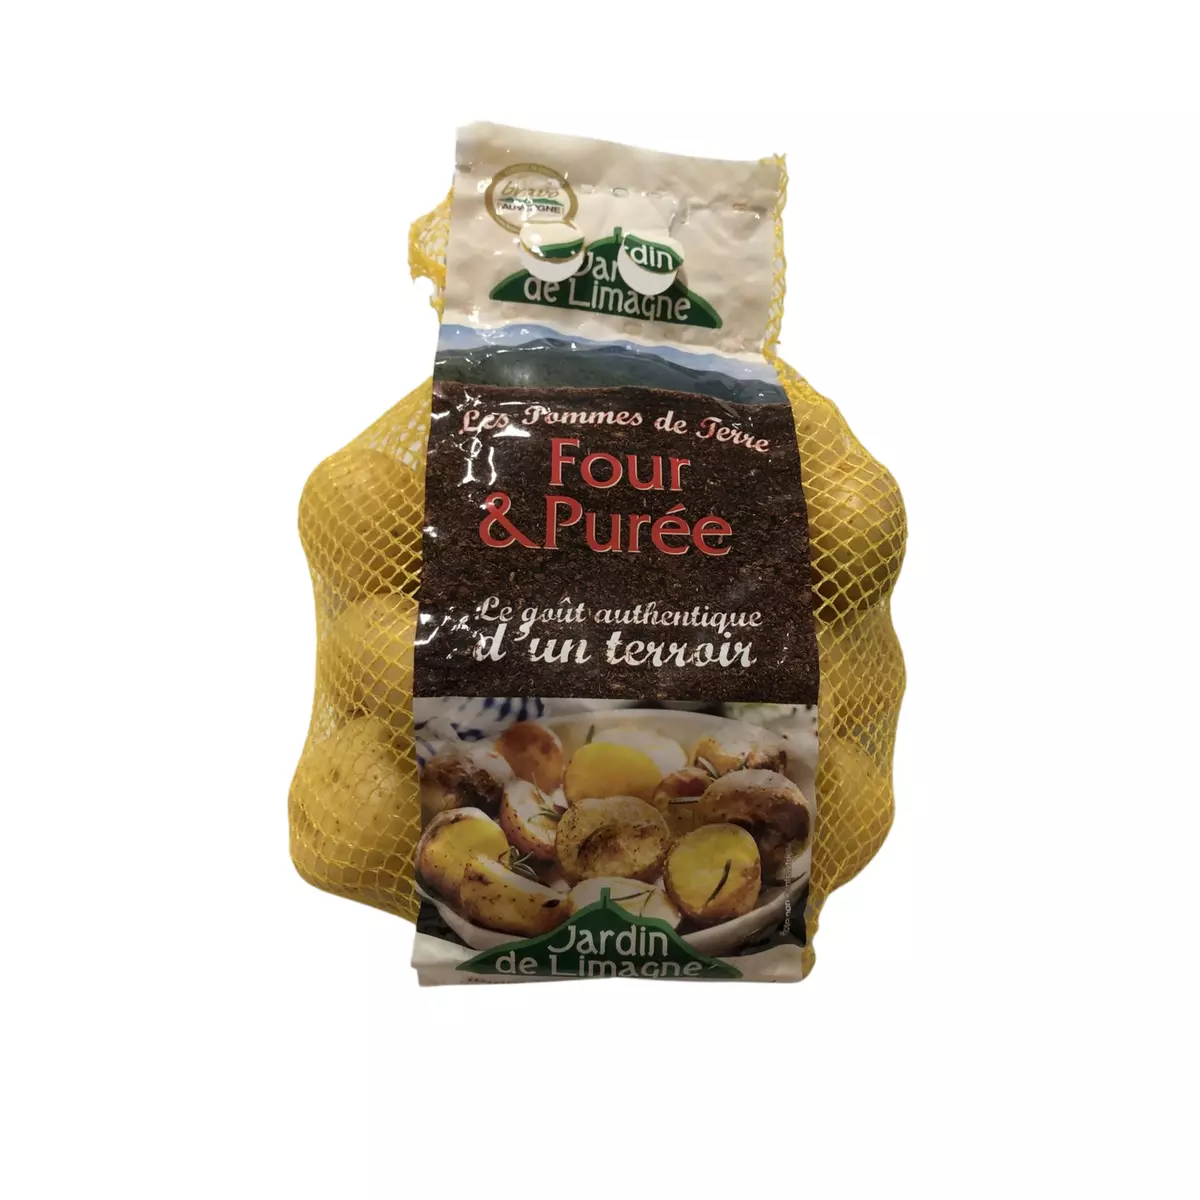 JARDIN DE LIMAGNE Pommes de terre fou et purée 1.5kg